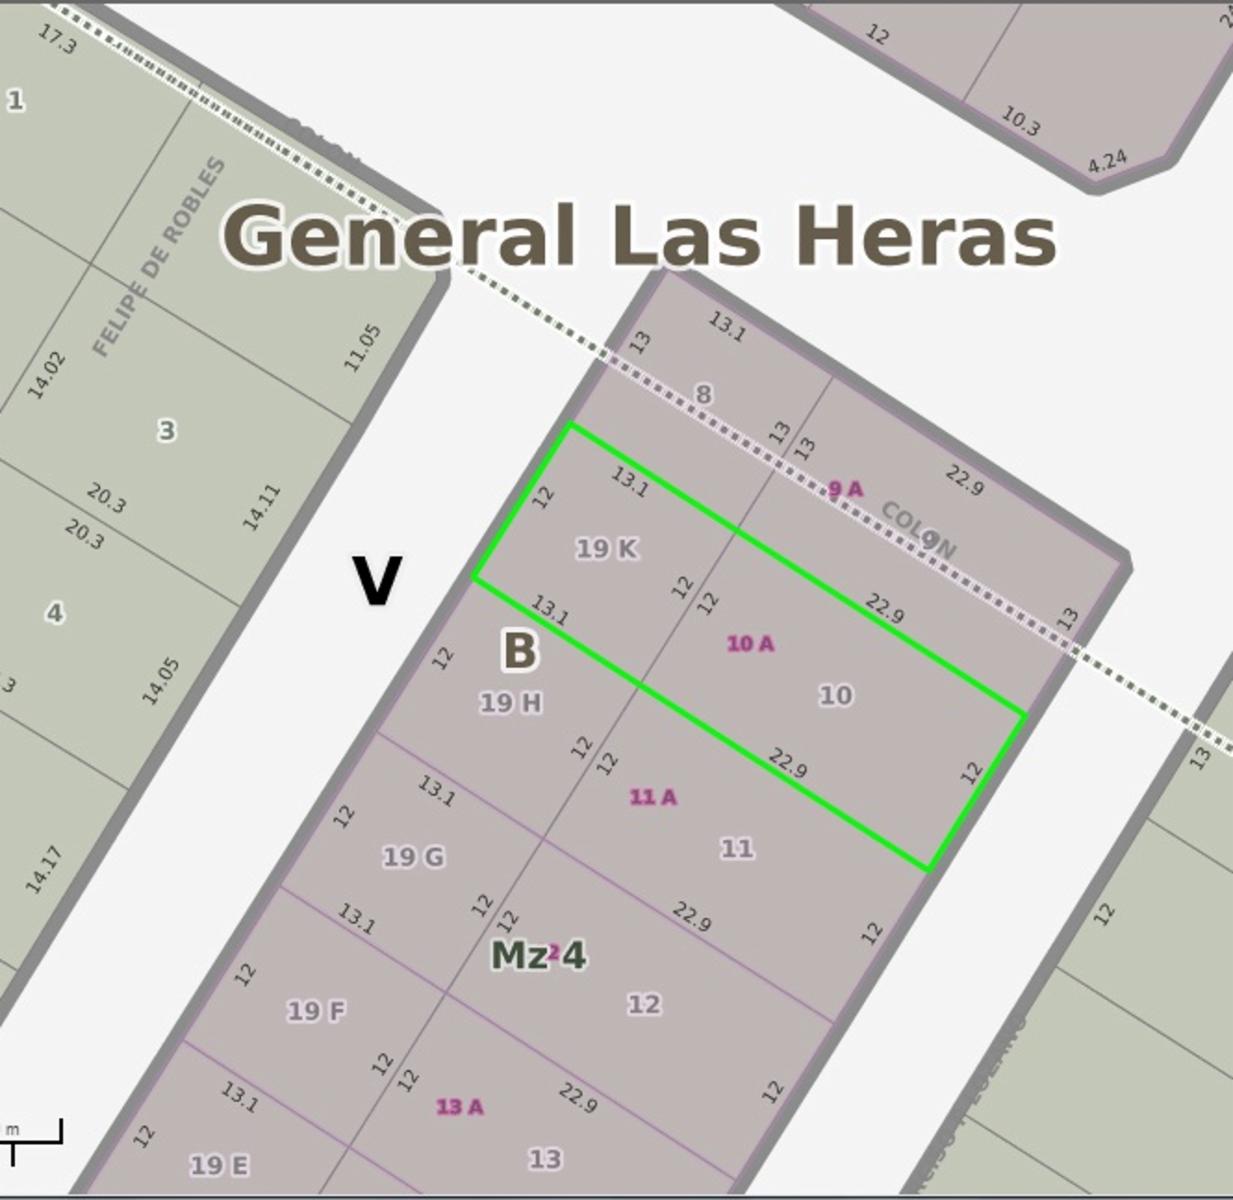 Venta de vivienda en General Las Heras.